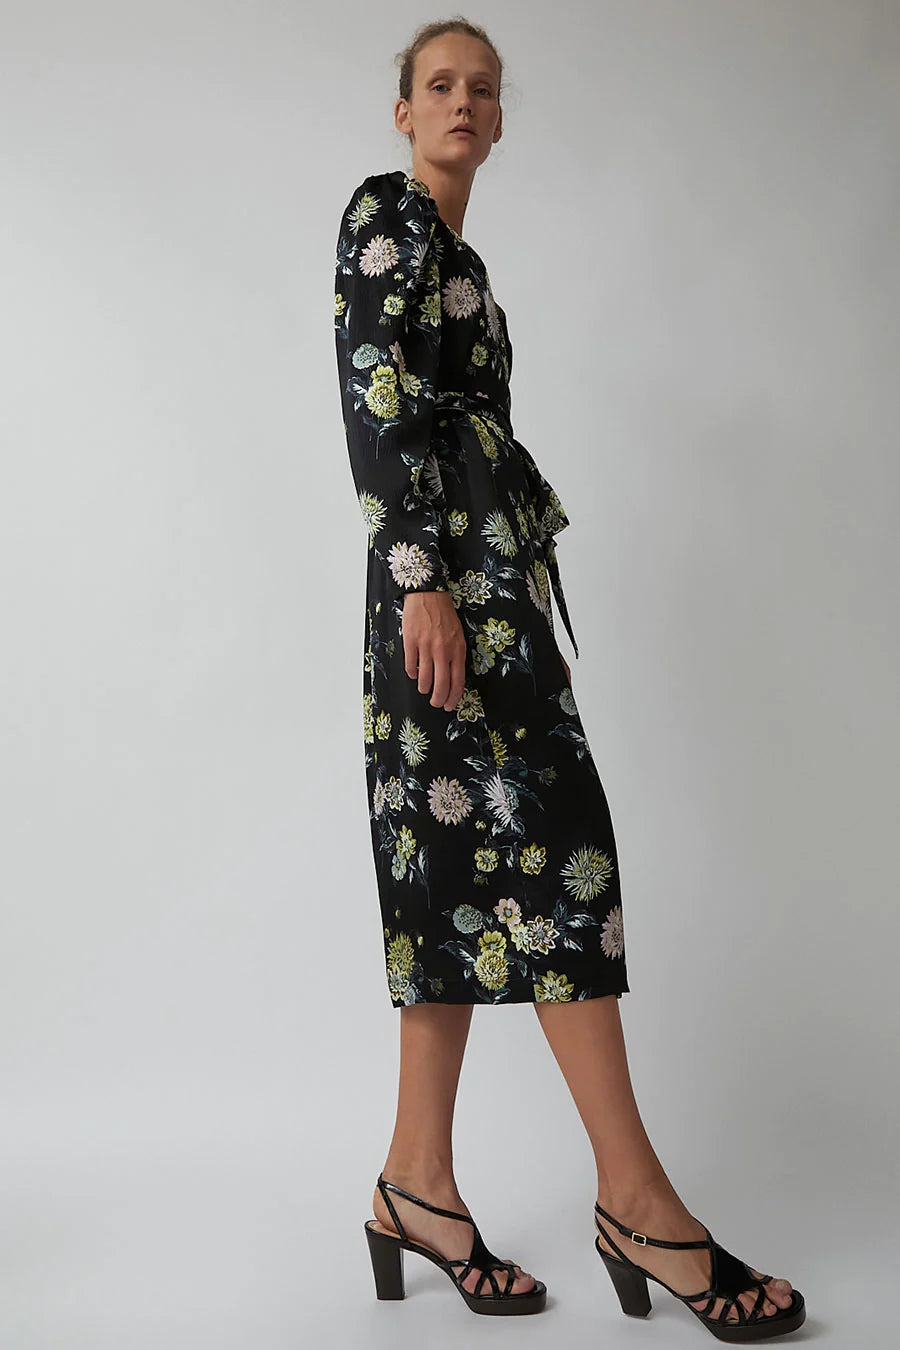 Franca Dress in Black Brighton Floral - No. 6